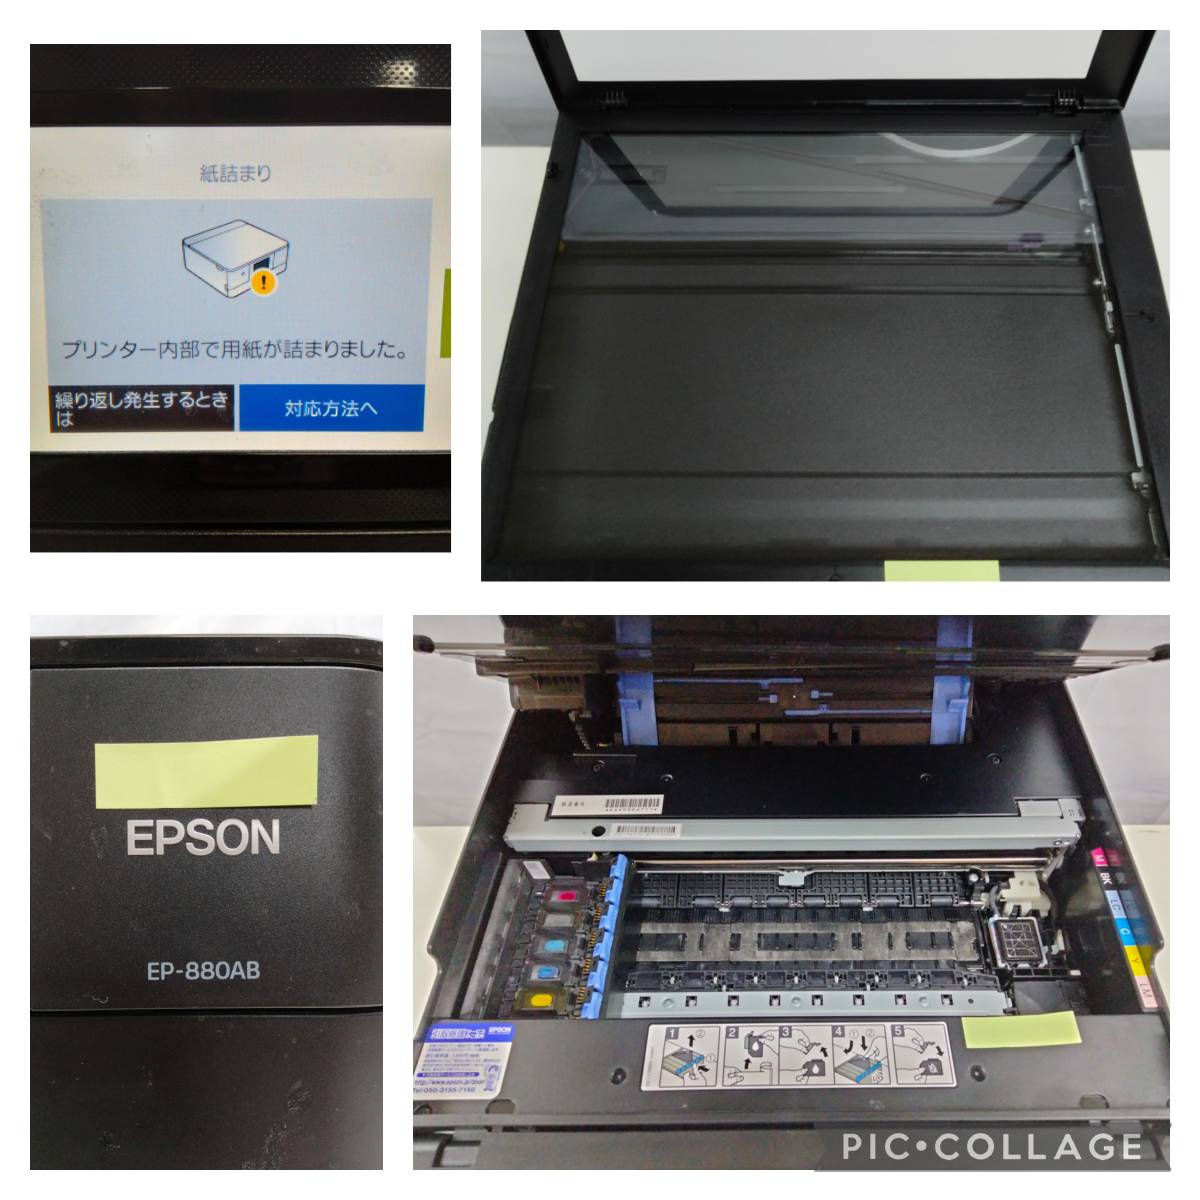 EPSON カラリオプリンター『EP-881AW』『EP-880AN』『EP-881AB』のジャンク品3台セット インクジェット複合機 202201-8_用紙詰まりエラー表示及びその他箇所です。